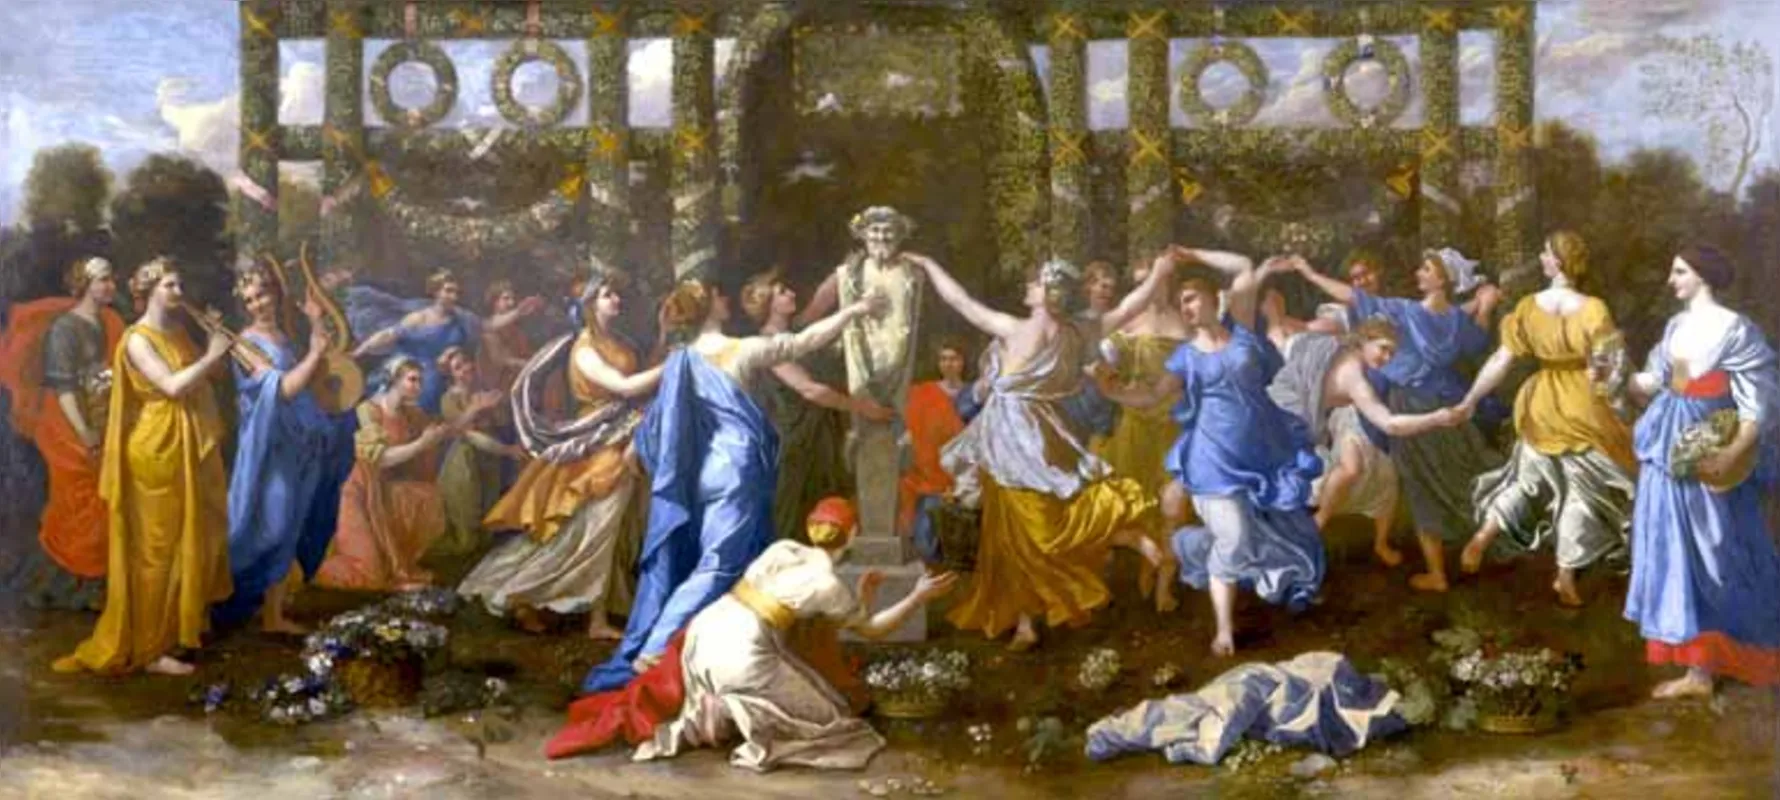 Himeneu travestido assistindo a uma dança em honra a Príapo, de Nicolas Poussin, integra a mostra do Masp, a obra data de 1634-1638